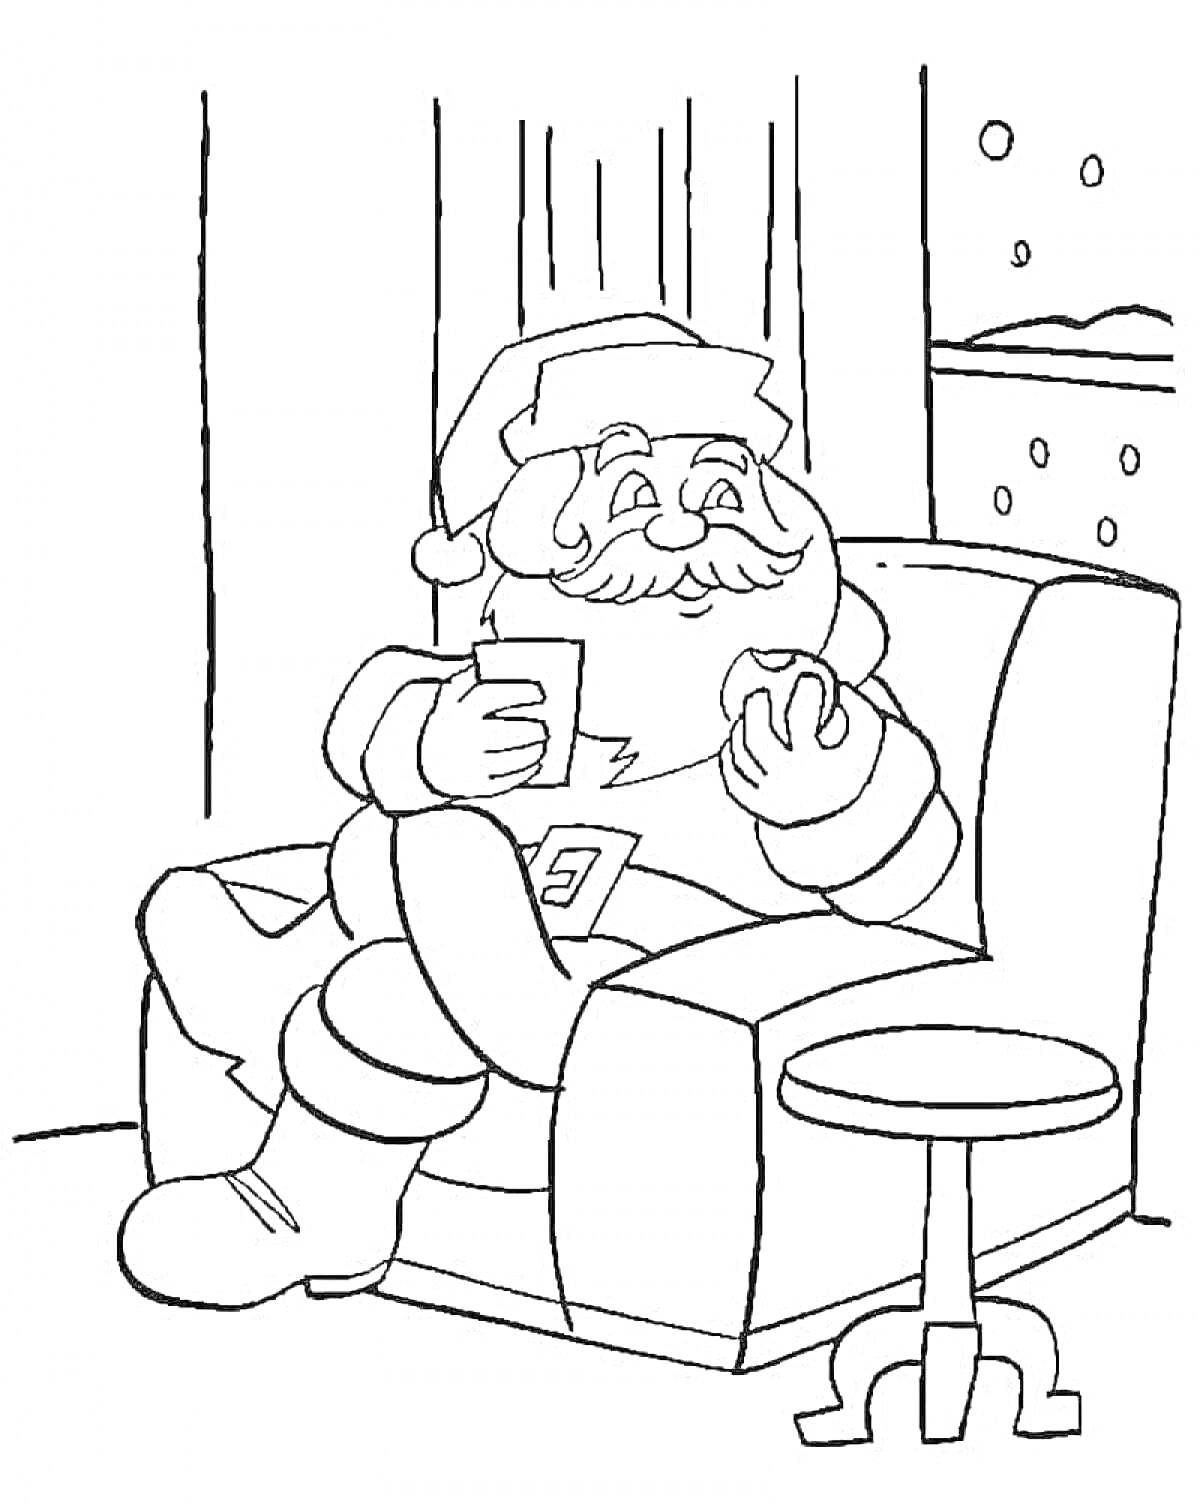 Раскраска Дед Мороз сидит в кресле с кружкой и печеньем, на фоне окно с падающим снегом